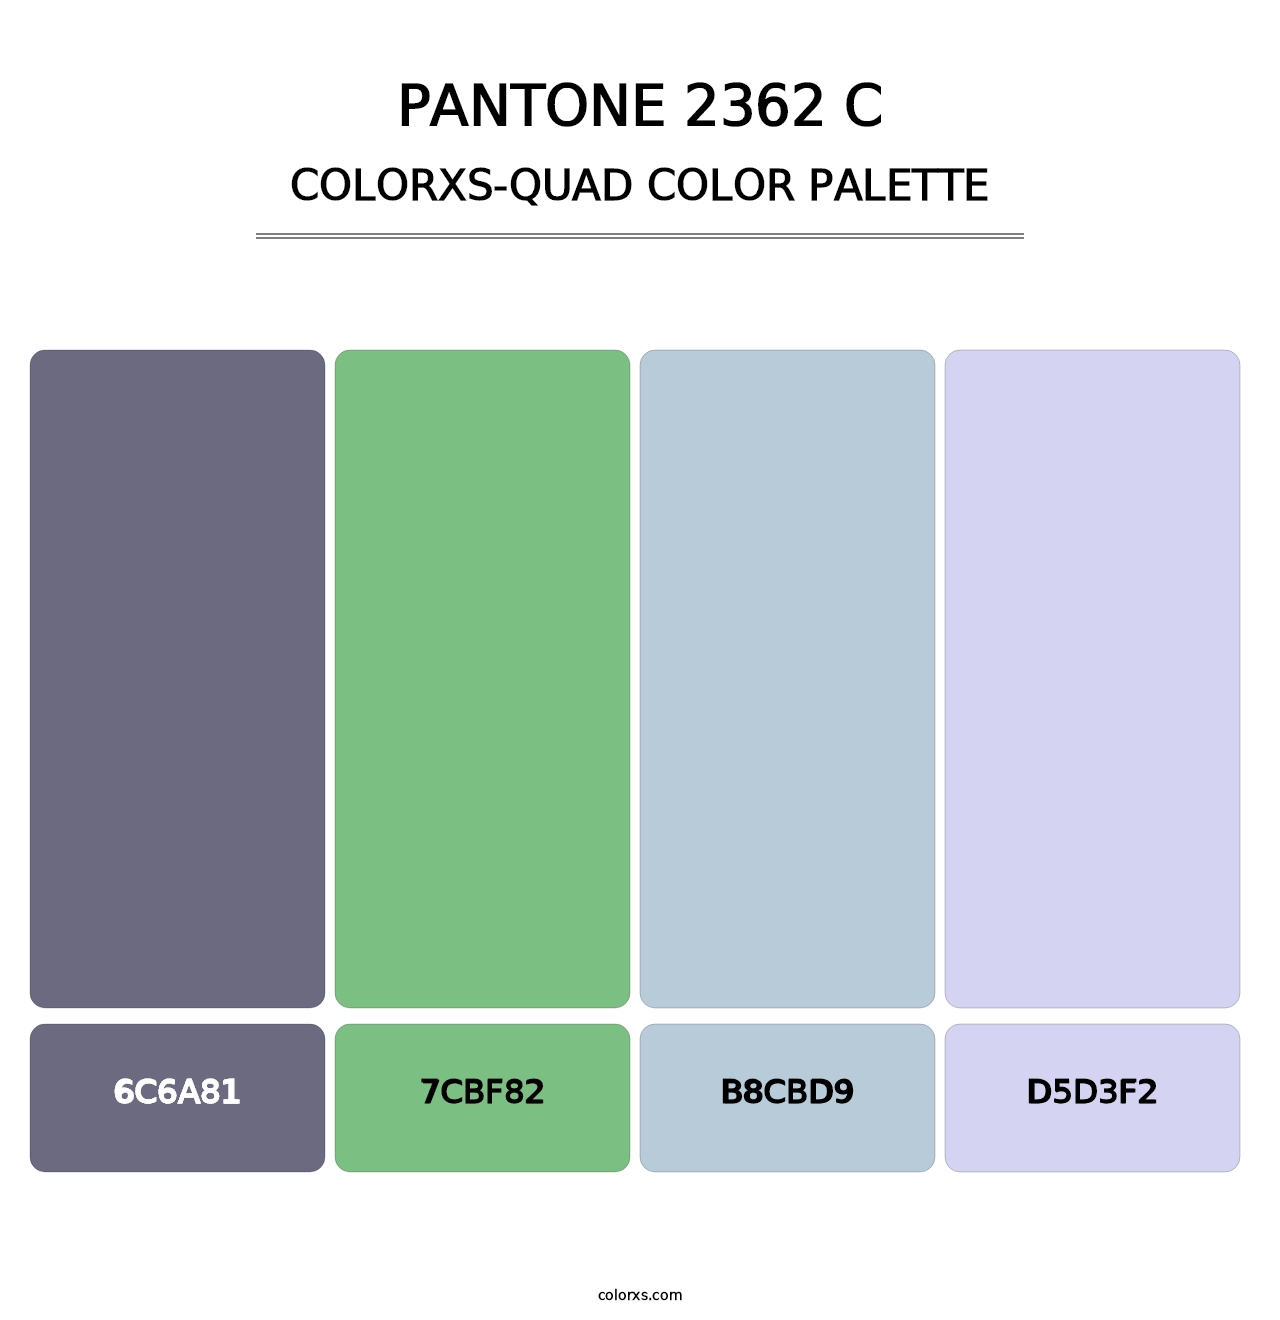 PANTONE 2362 C - Colorxs Quad Palette